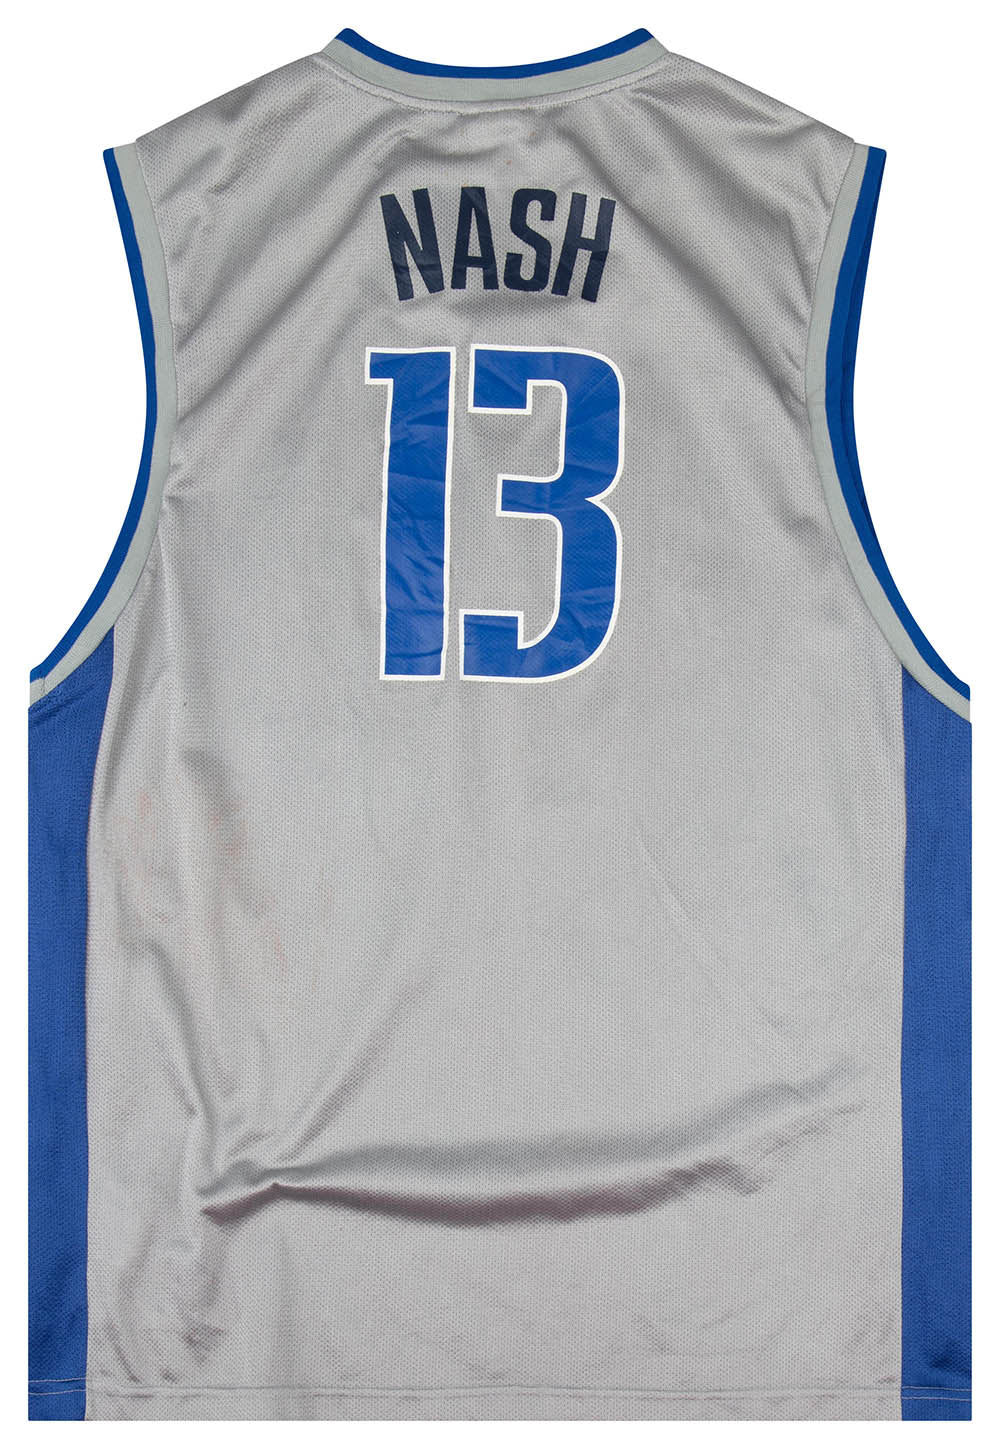 Steve Nash Dallas Mavericks #13 Gray/Blue Reebok Jersey Adult Size